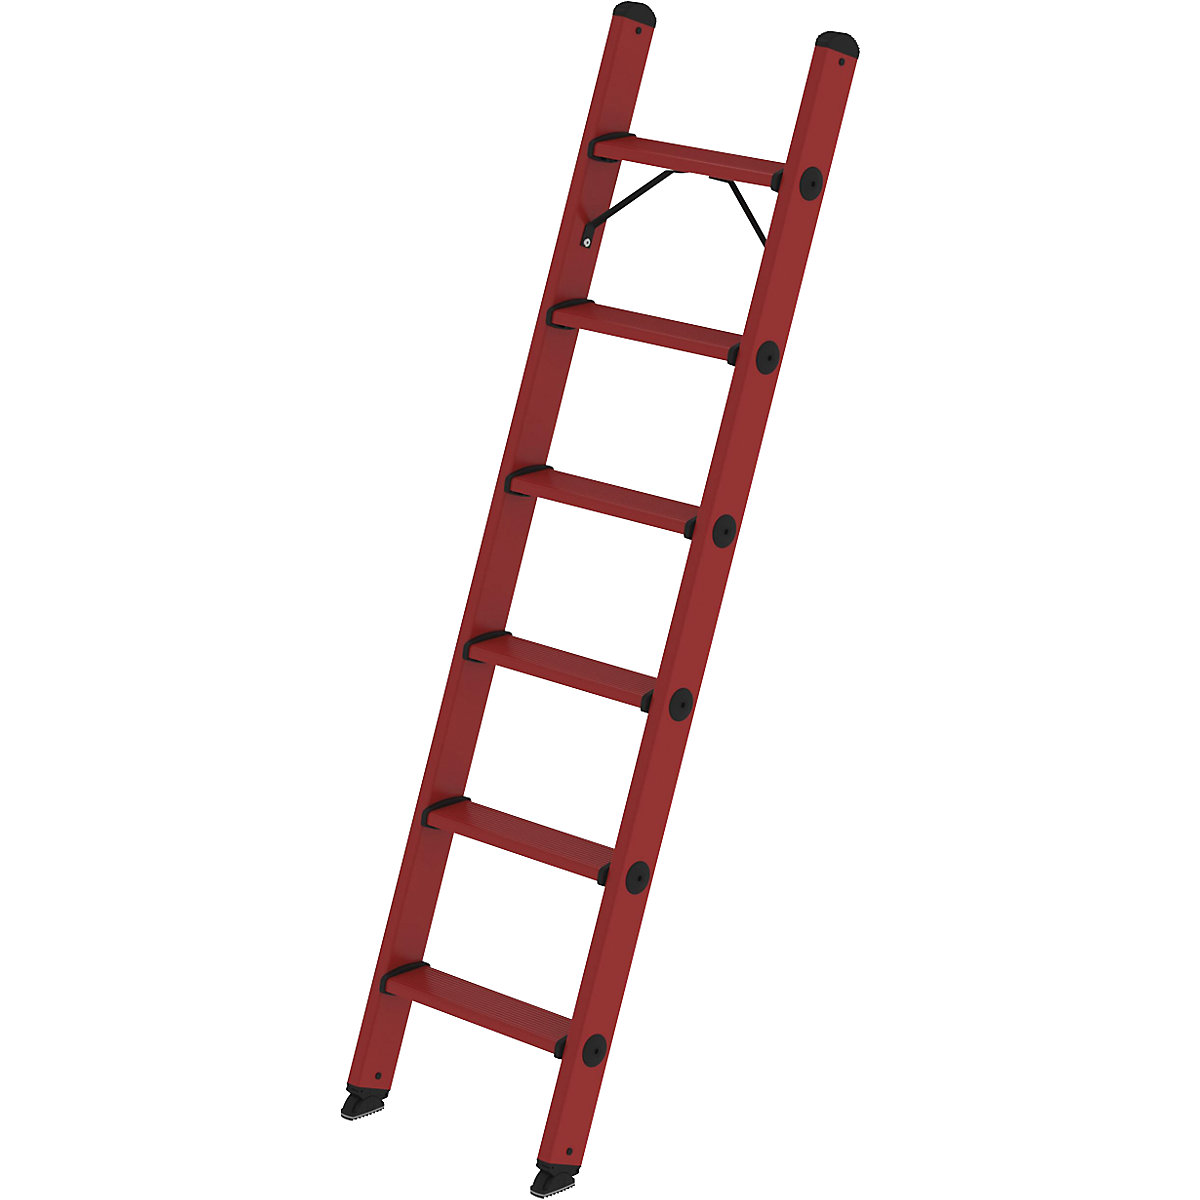 Prislonska lestev s stopnicami iz fiberglasa – MUNK